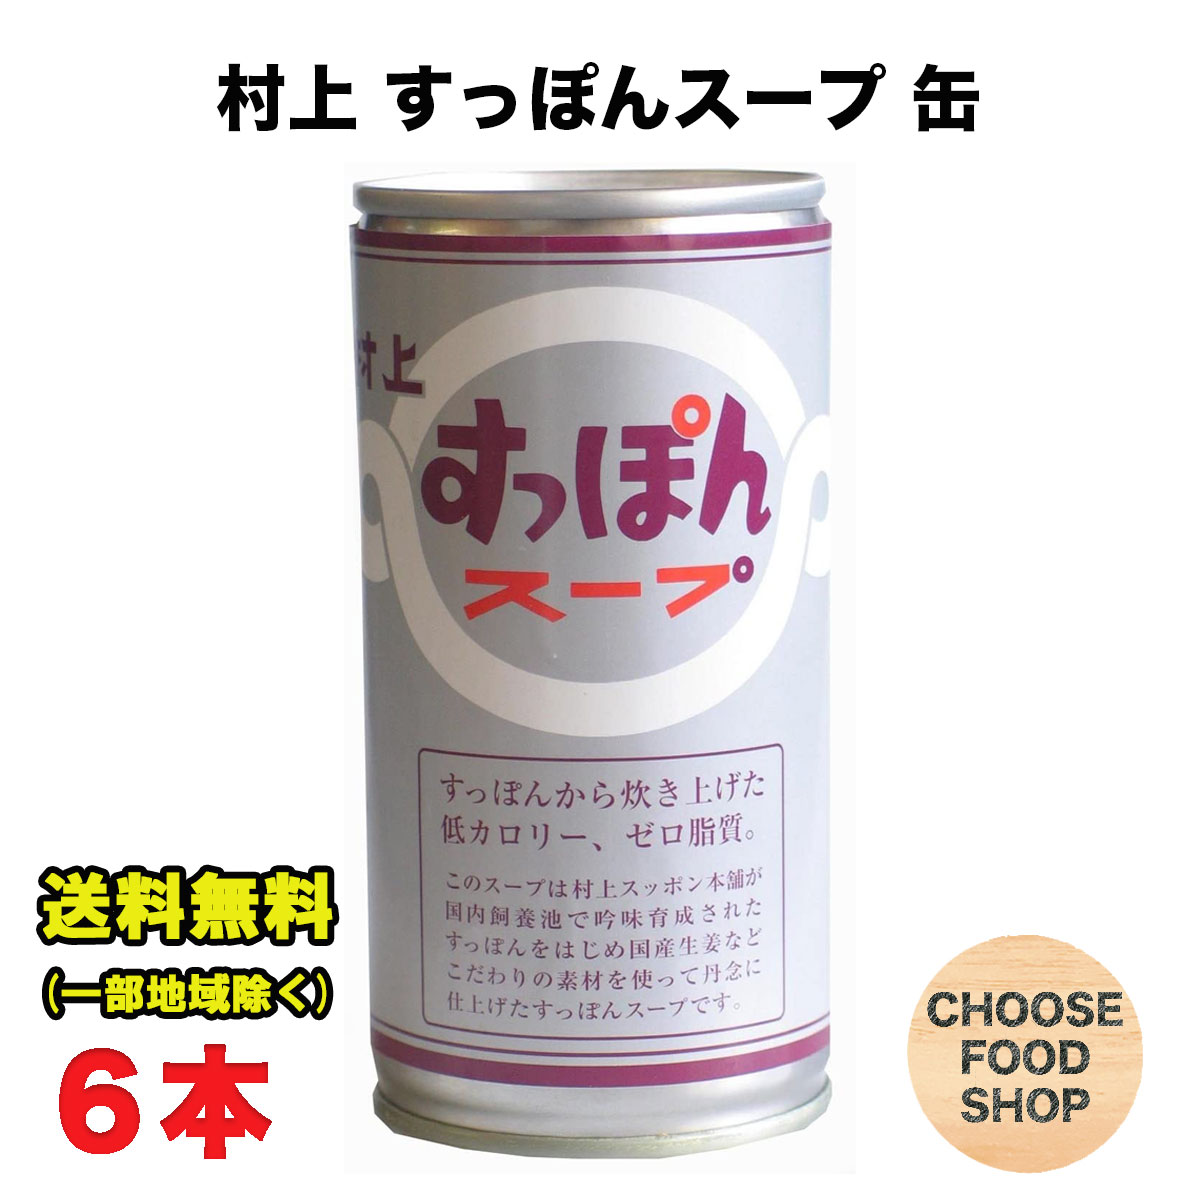 送料無料 エバラ なべしゃぶ 柑橘醤油つゆ (100g×2袋)×24袋